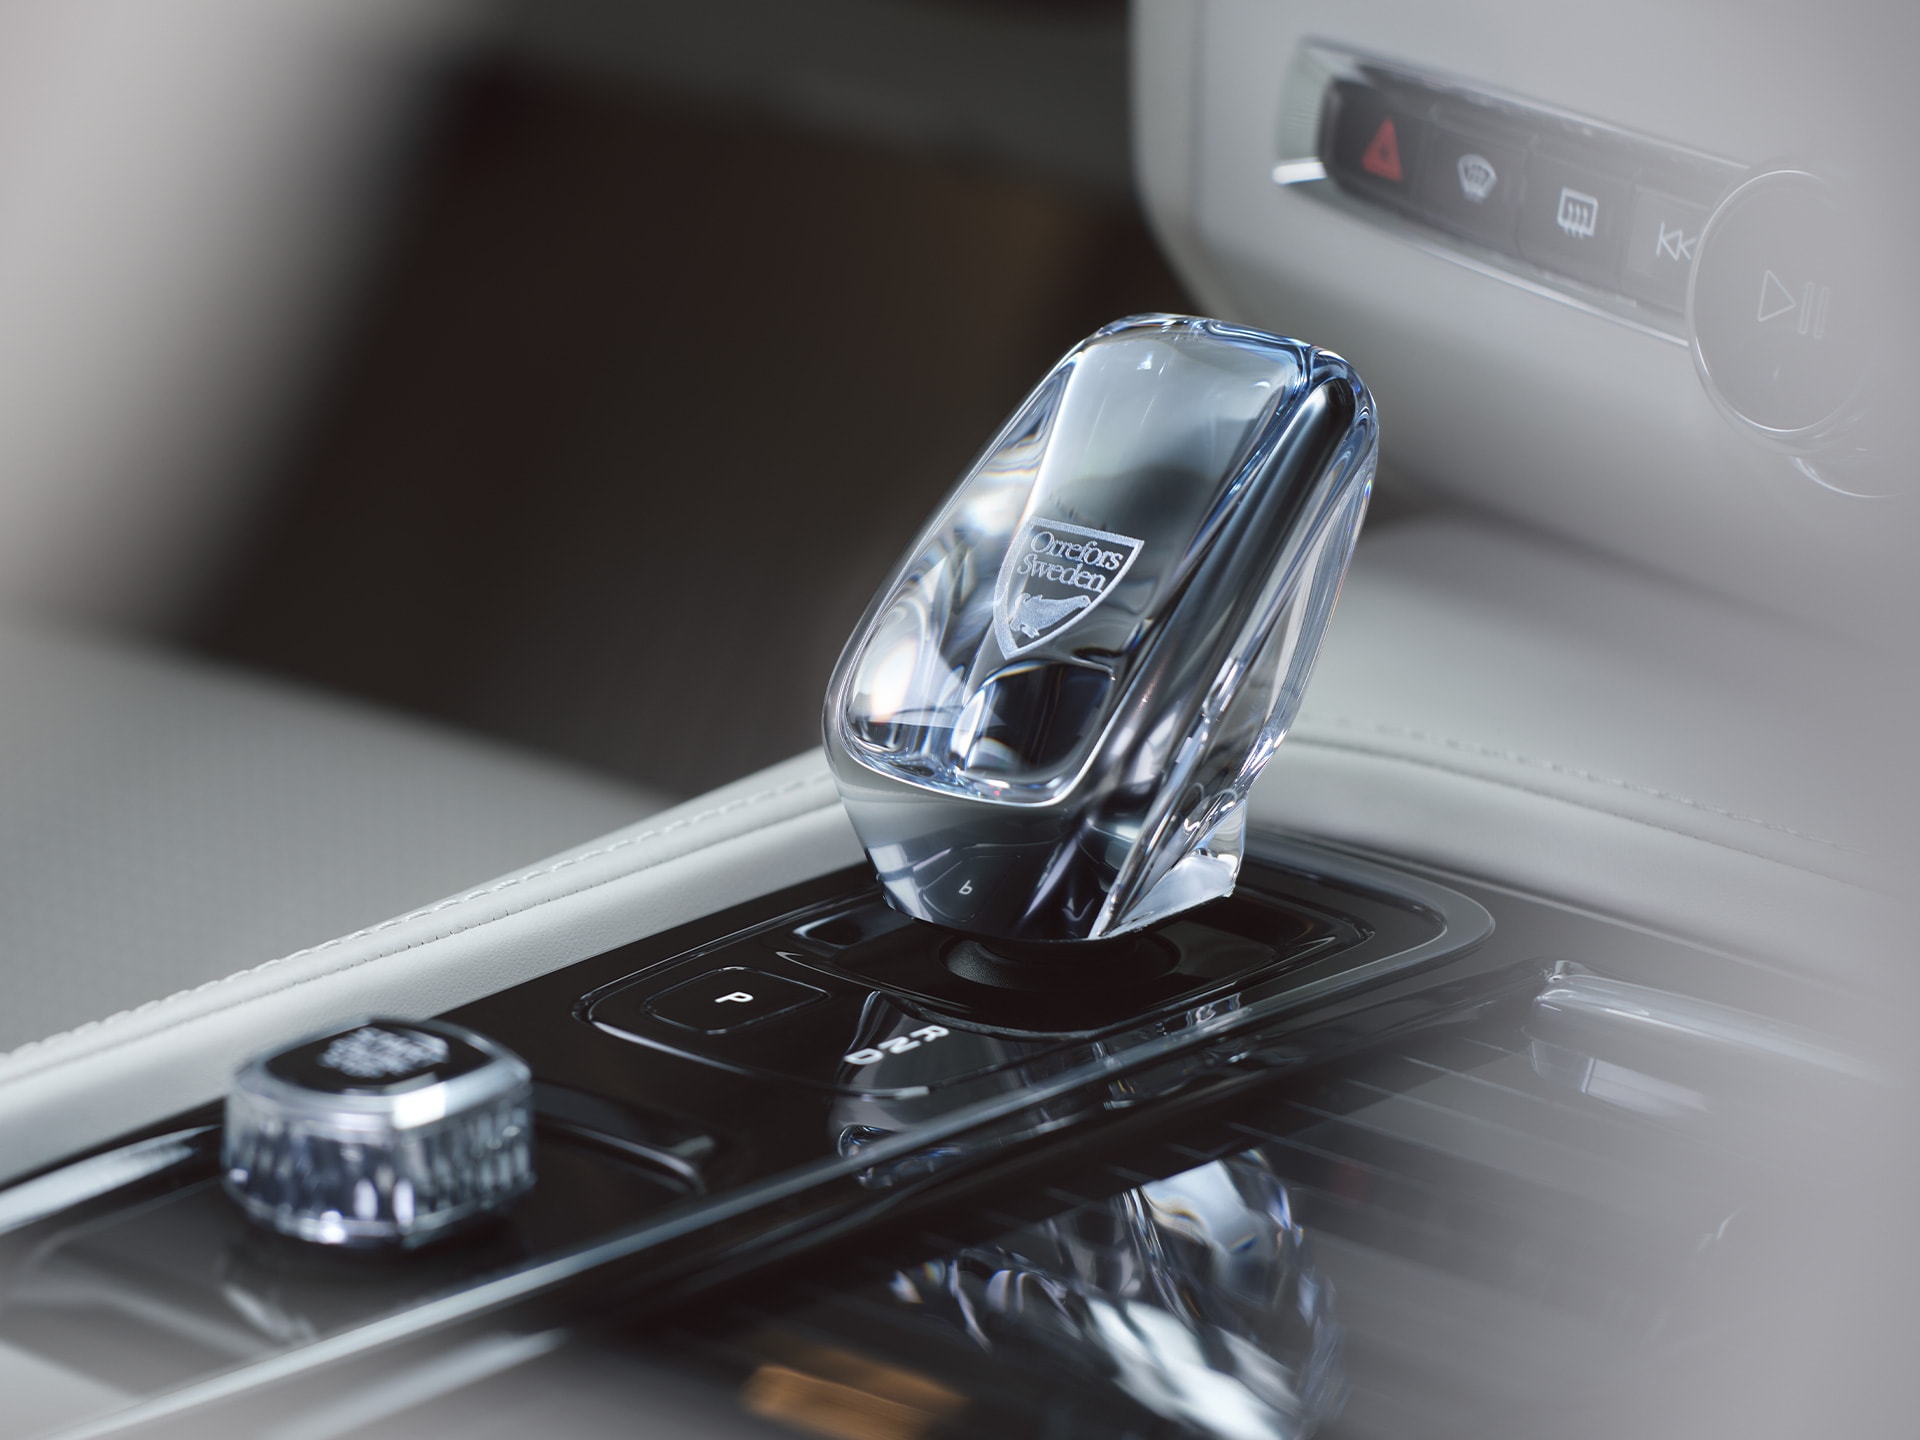 Kristalna ručica mjenjača od originalnog švedskog kristala iz Orreforsa u limuzini Volvo S90.